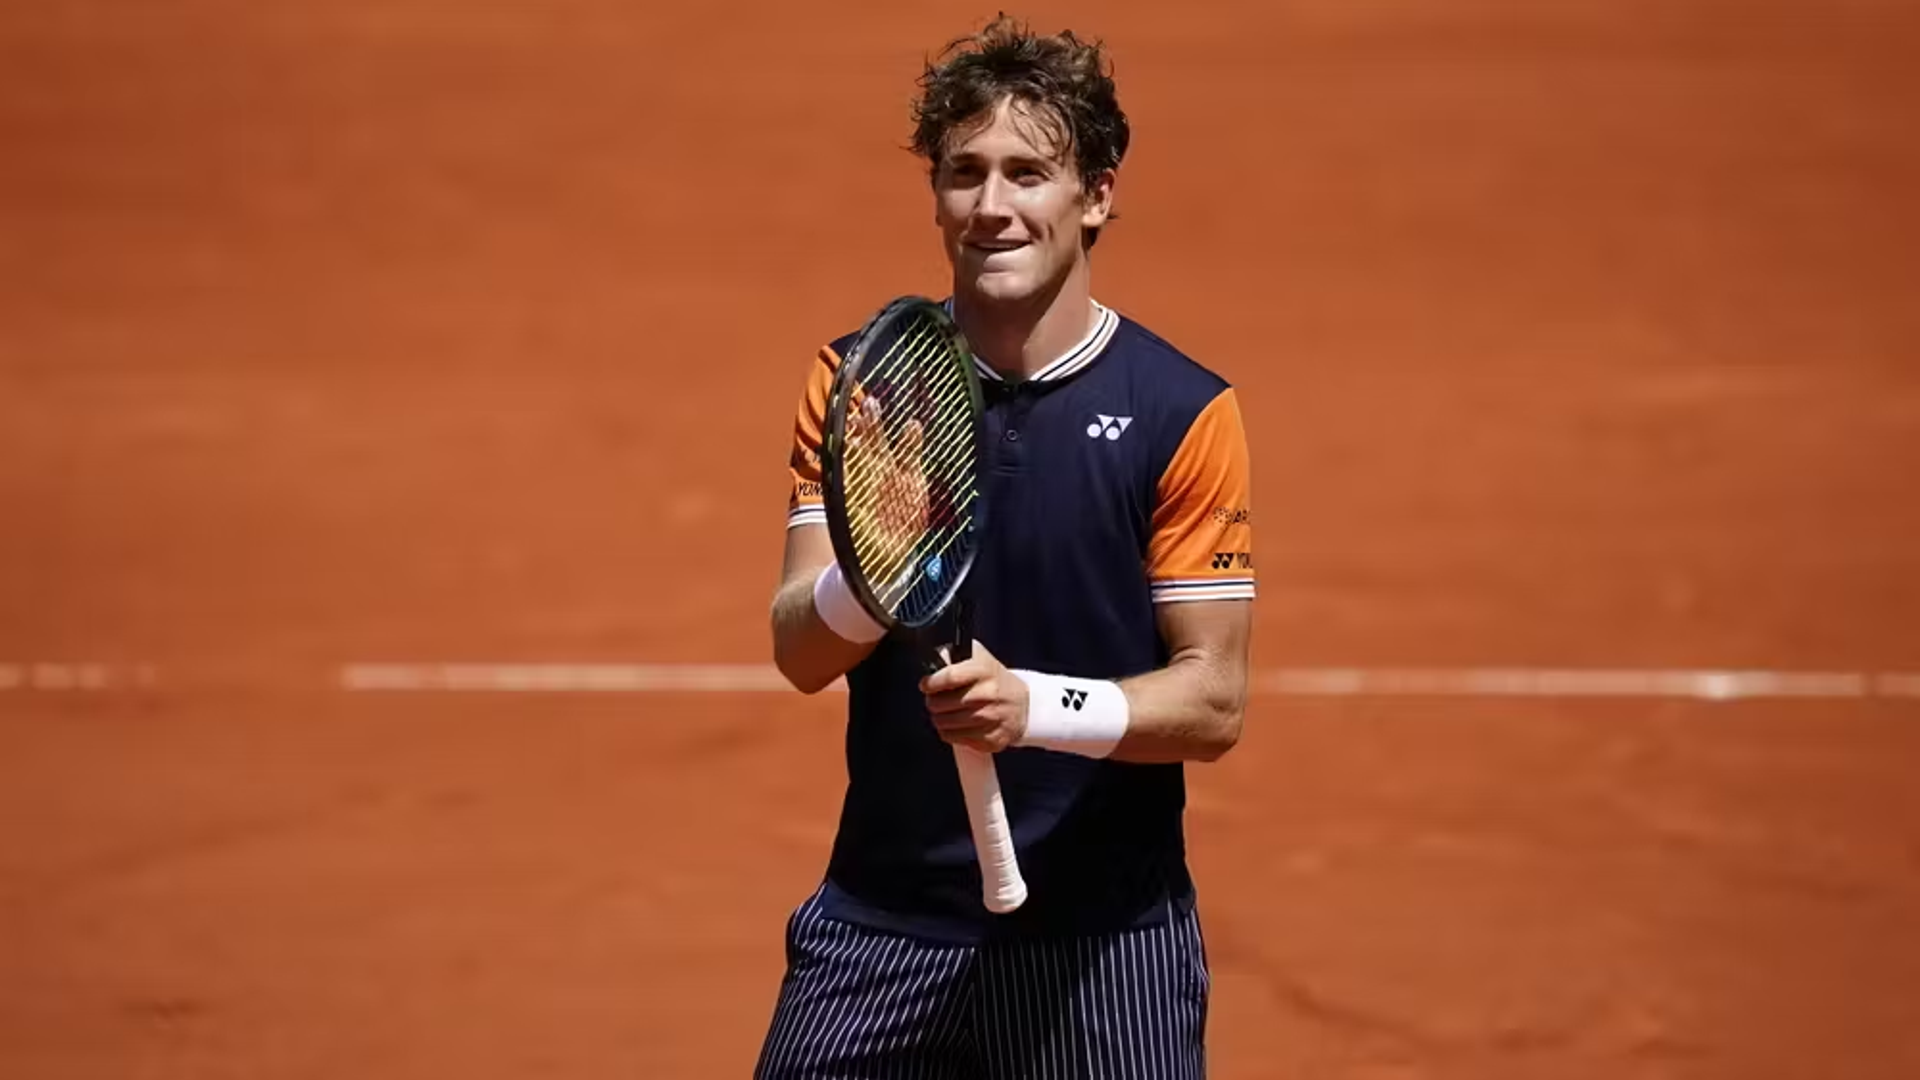 World No. 4 Ruud advances to Roland Garros third round